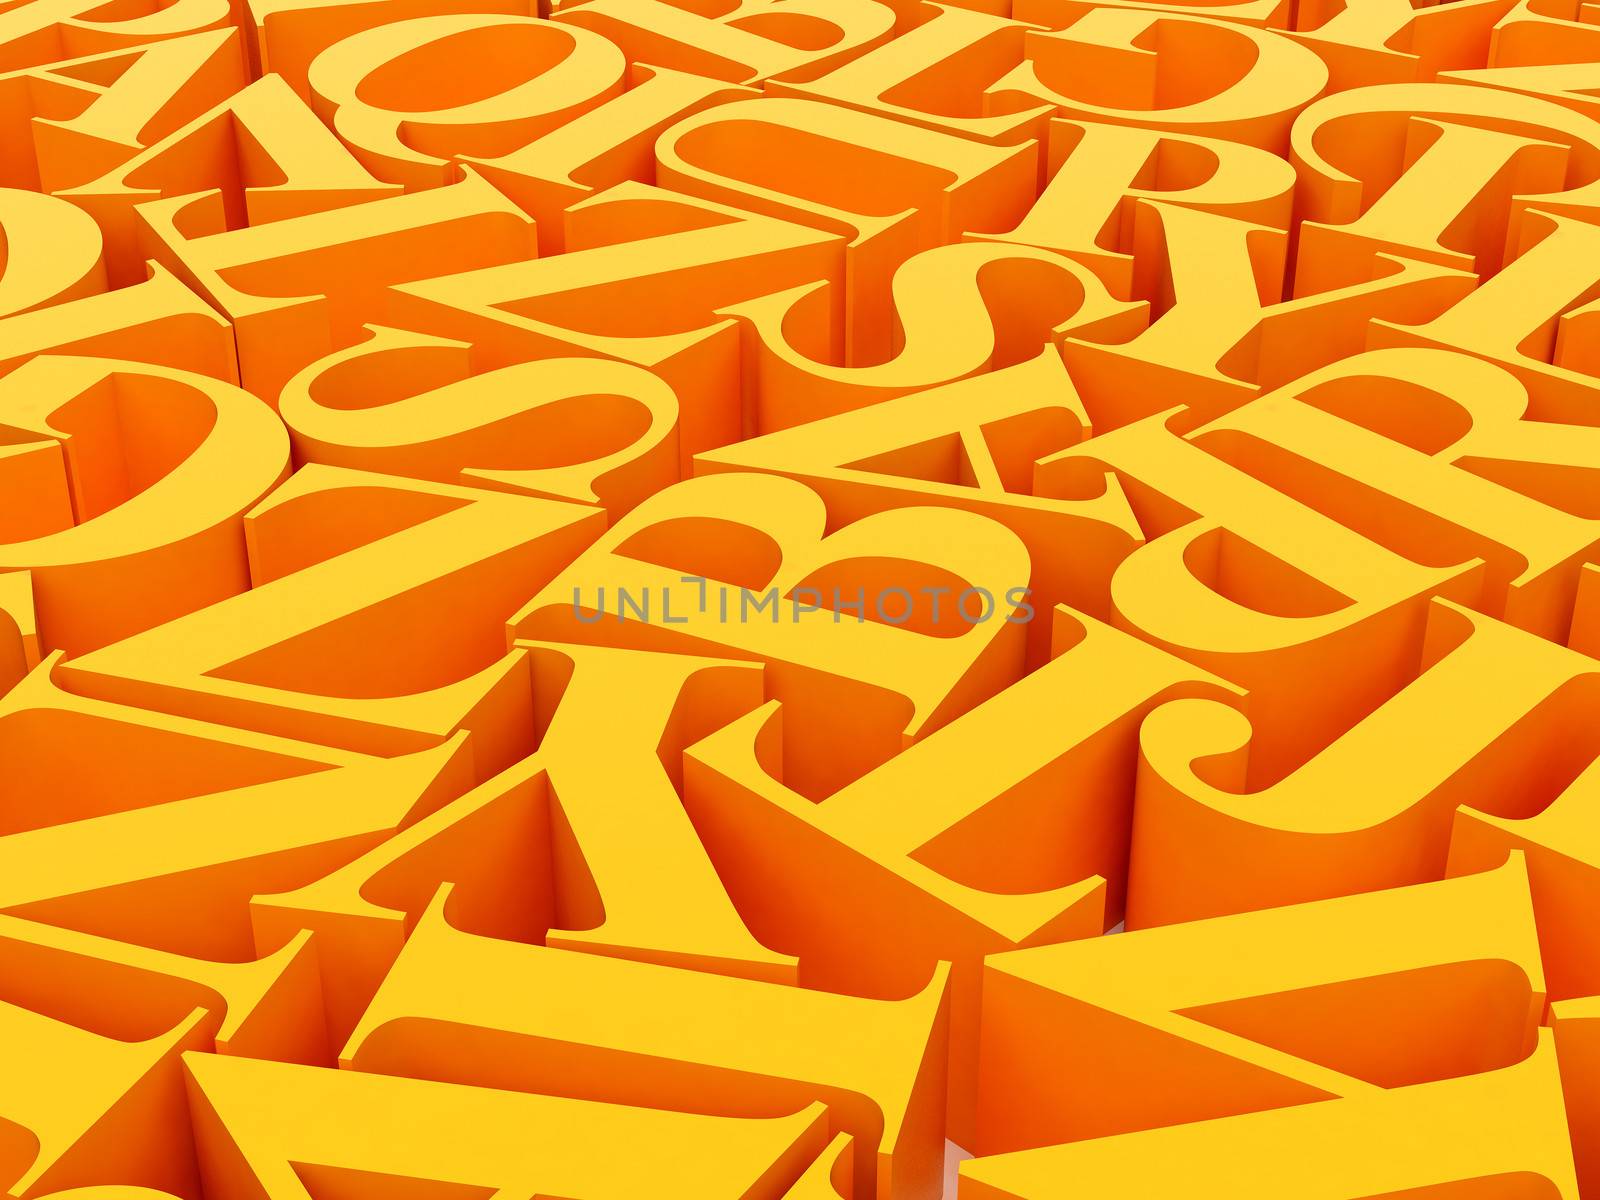 High resolution image. 3d rendered illustration. Background of alphabets.